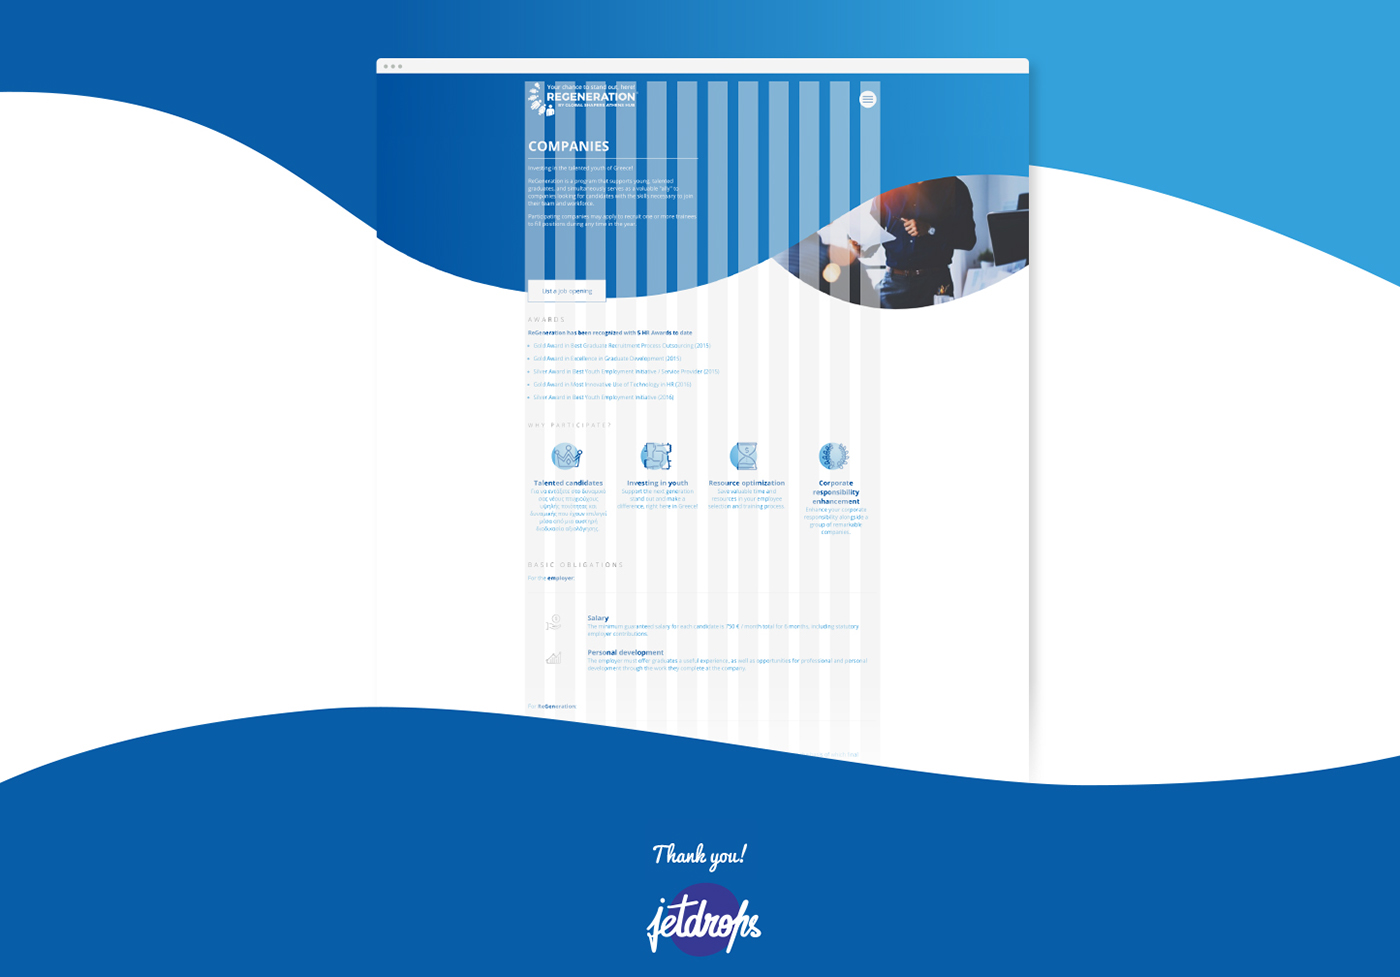 redesign Web Design  art direction  Platform curves animation  bubbles blue gradient Human Resources